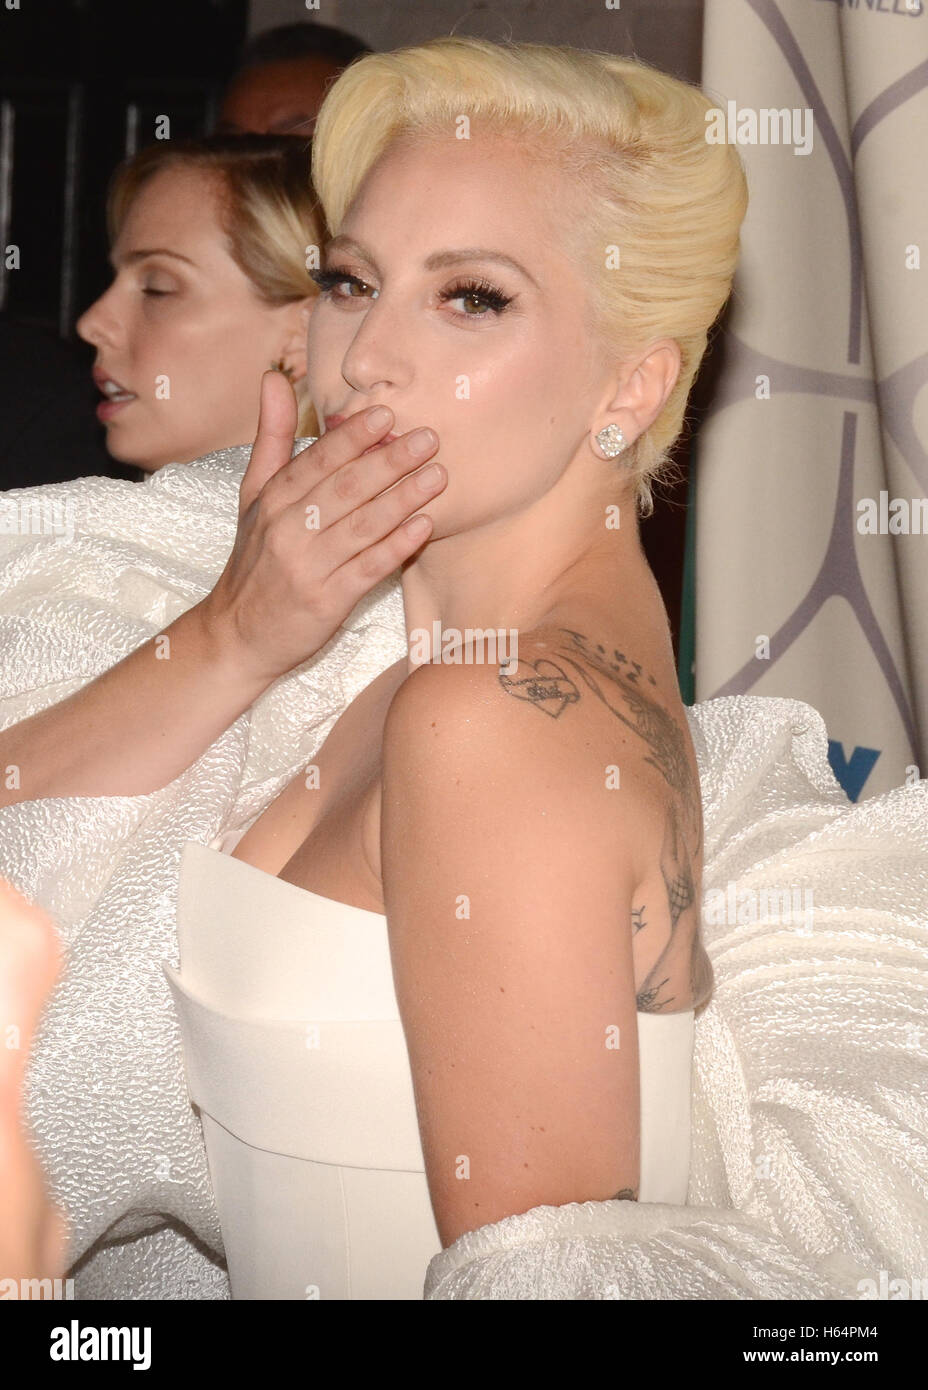 Lady Gaga Stefani Joanne Angelina Germanotta aka asiste a la 67ª Primetime Emmy Awards Fox después del partido el 20 de septiembre de 2015 en Los Angeles, California. Foto de stock